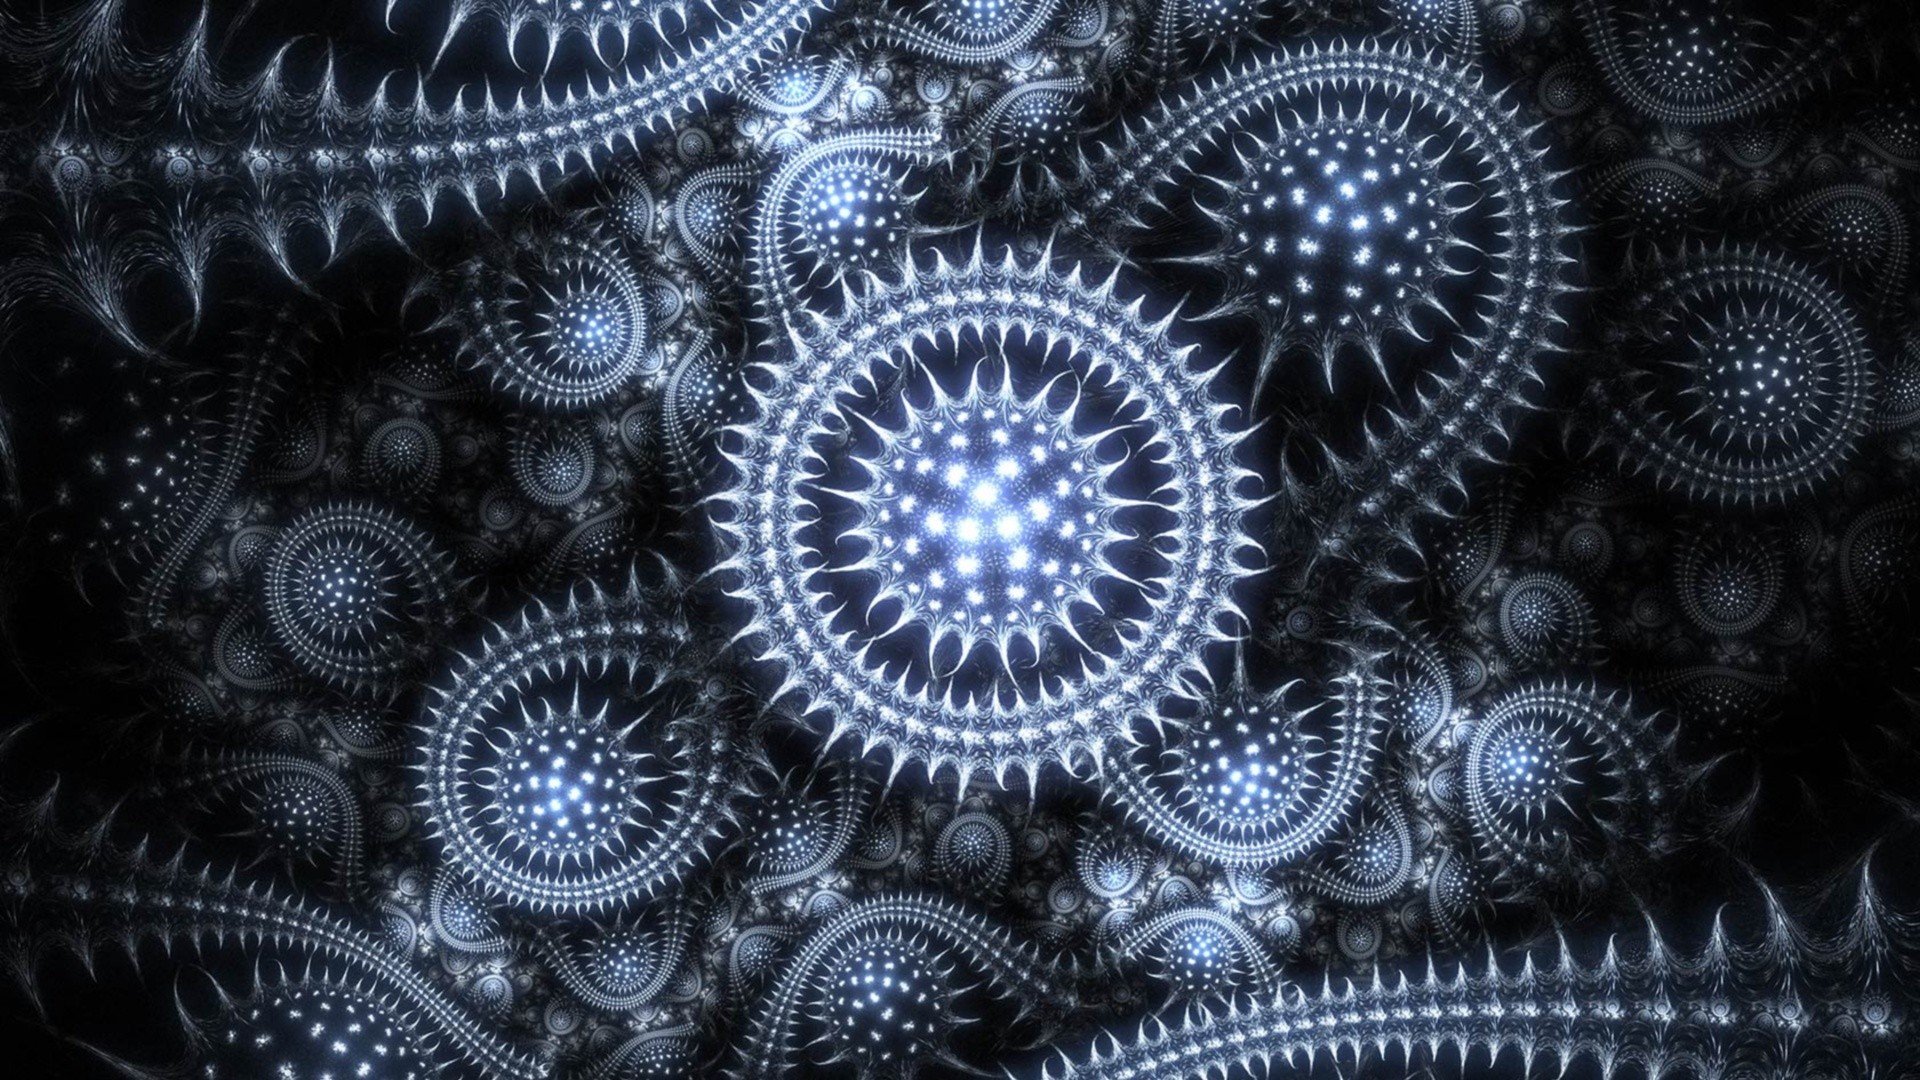 Abstract fractals patterns wallpaper | 1920x1080 | 275575 | WallpaperUP